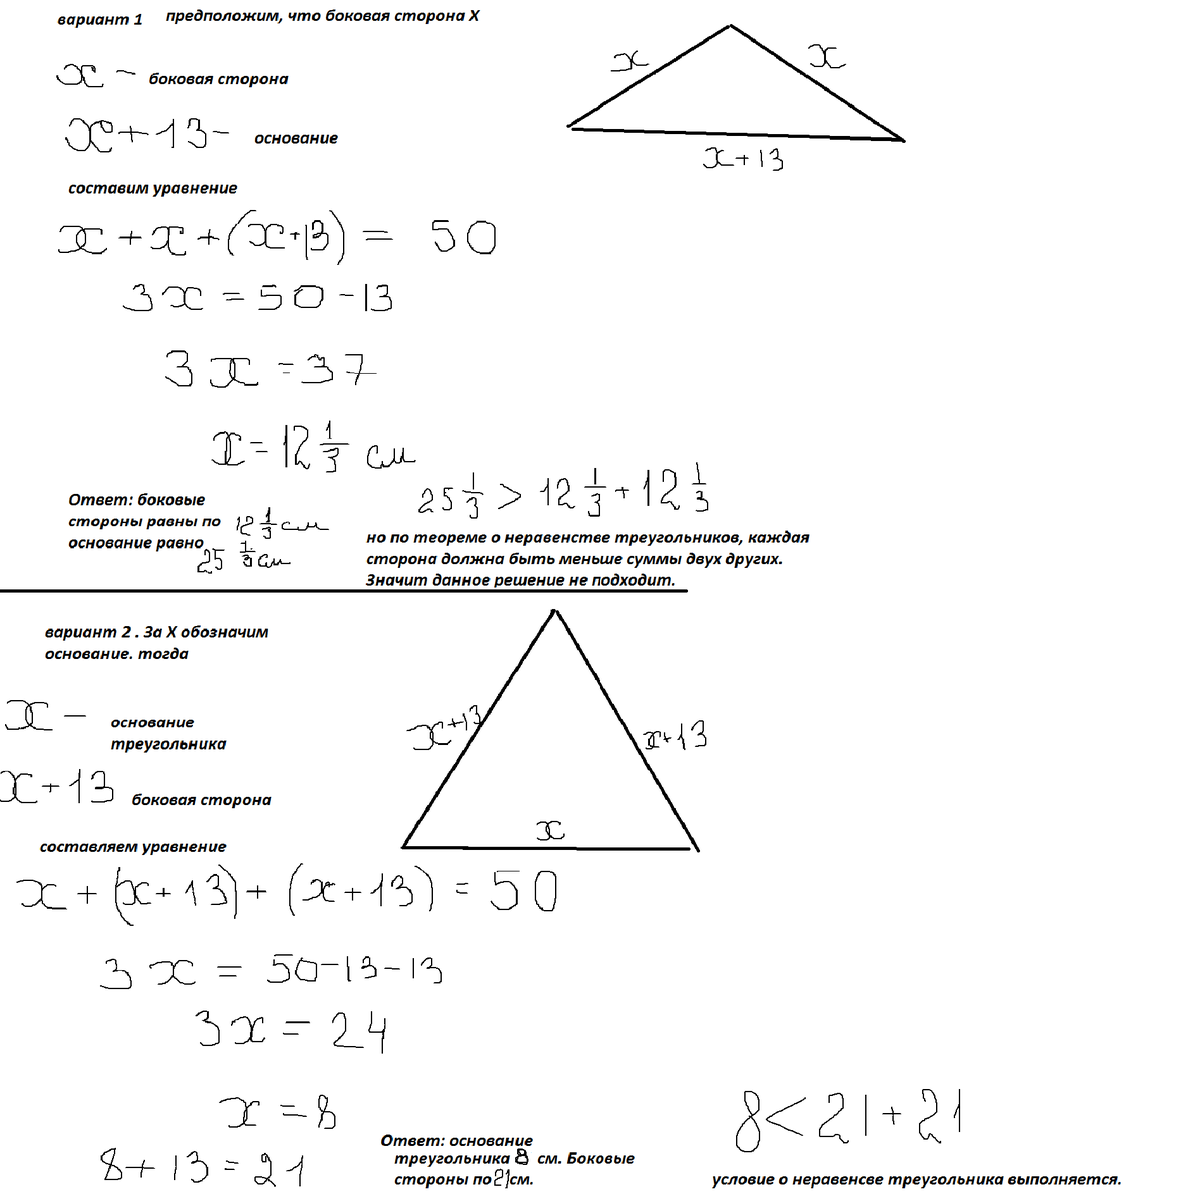 Периметр равнобедренного тупоугольного треугольника равен 60. Периметр равнобедренного треугольника. Периметр равнобедренного треугольника равен. Периметр равнобедренного треугольника равен 50. Периметр равнобедренного тупоугольного треугольника.